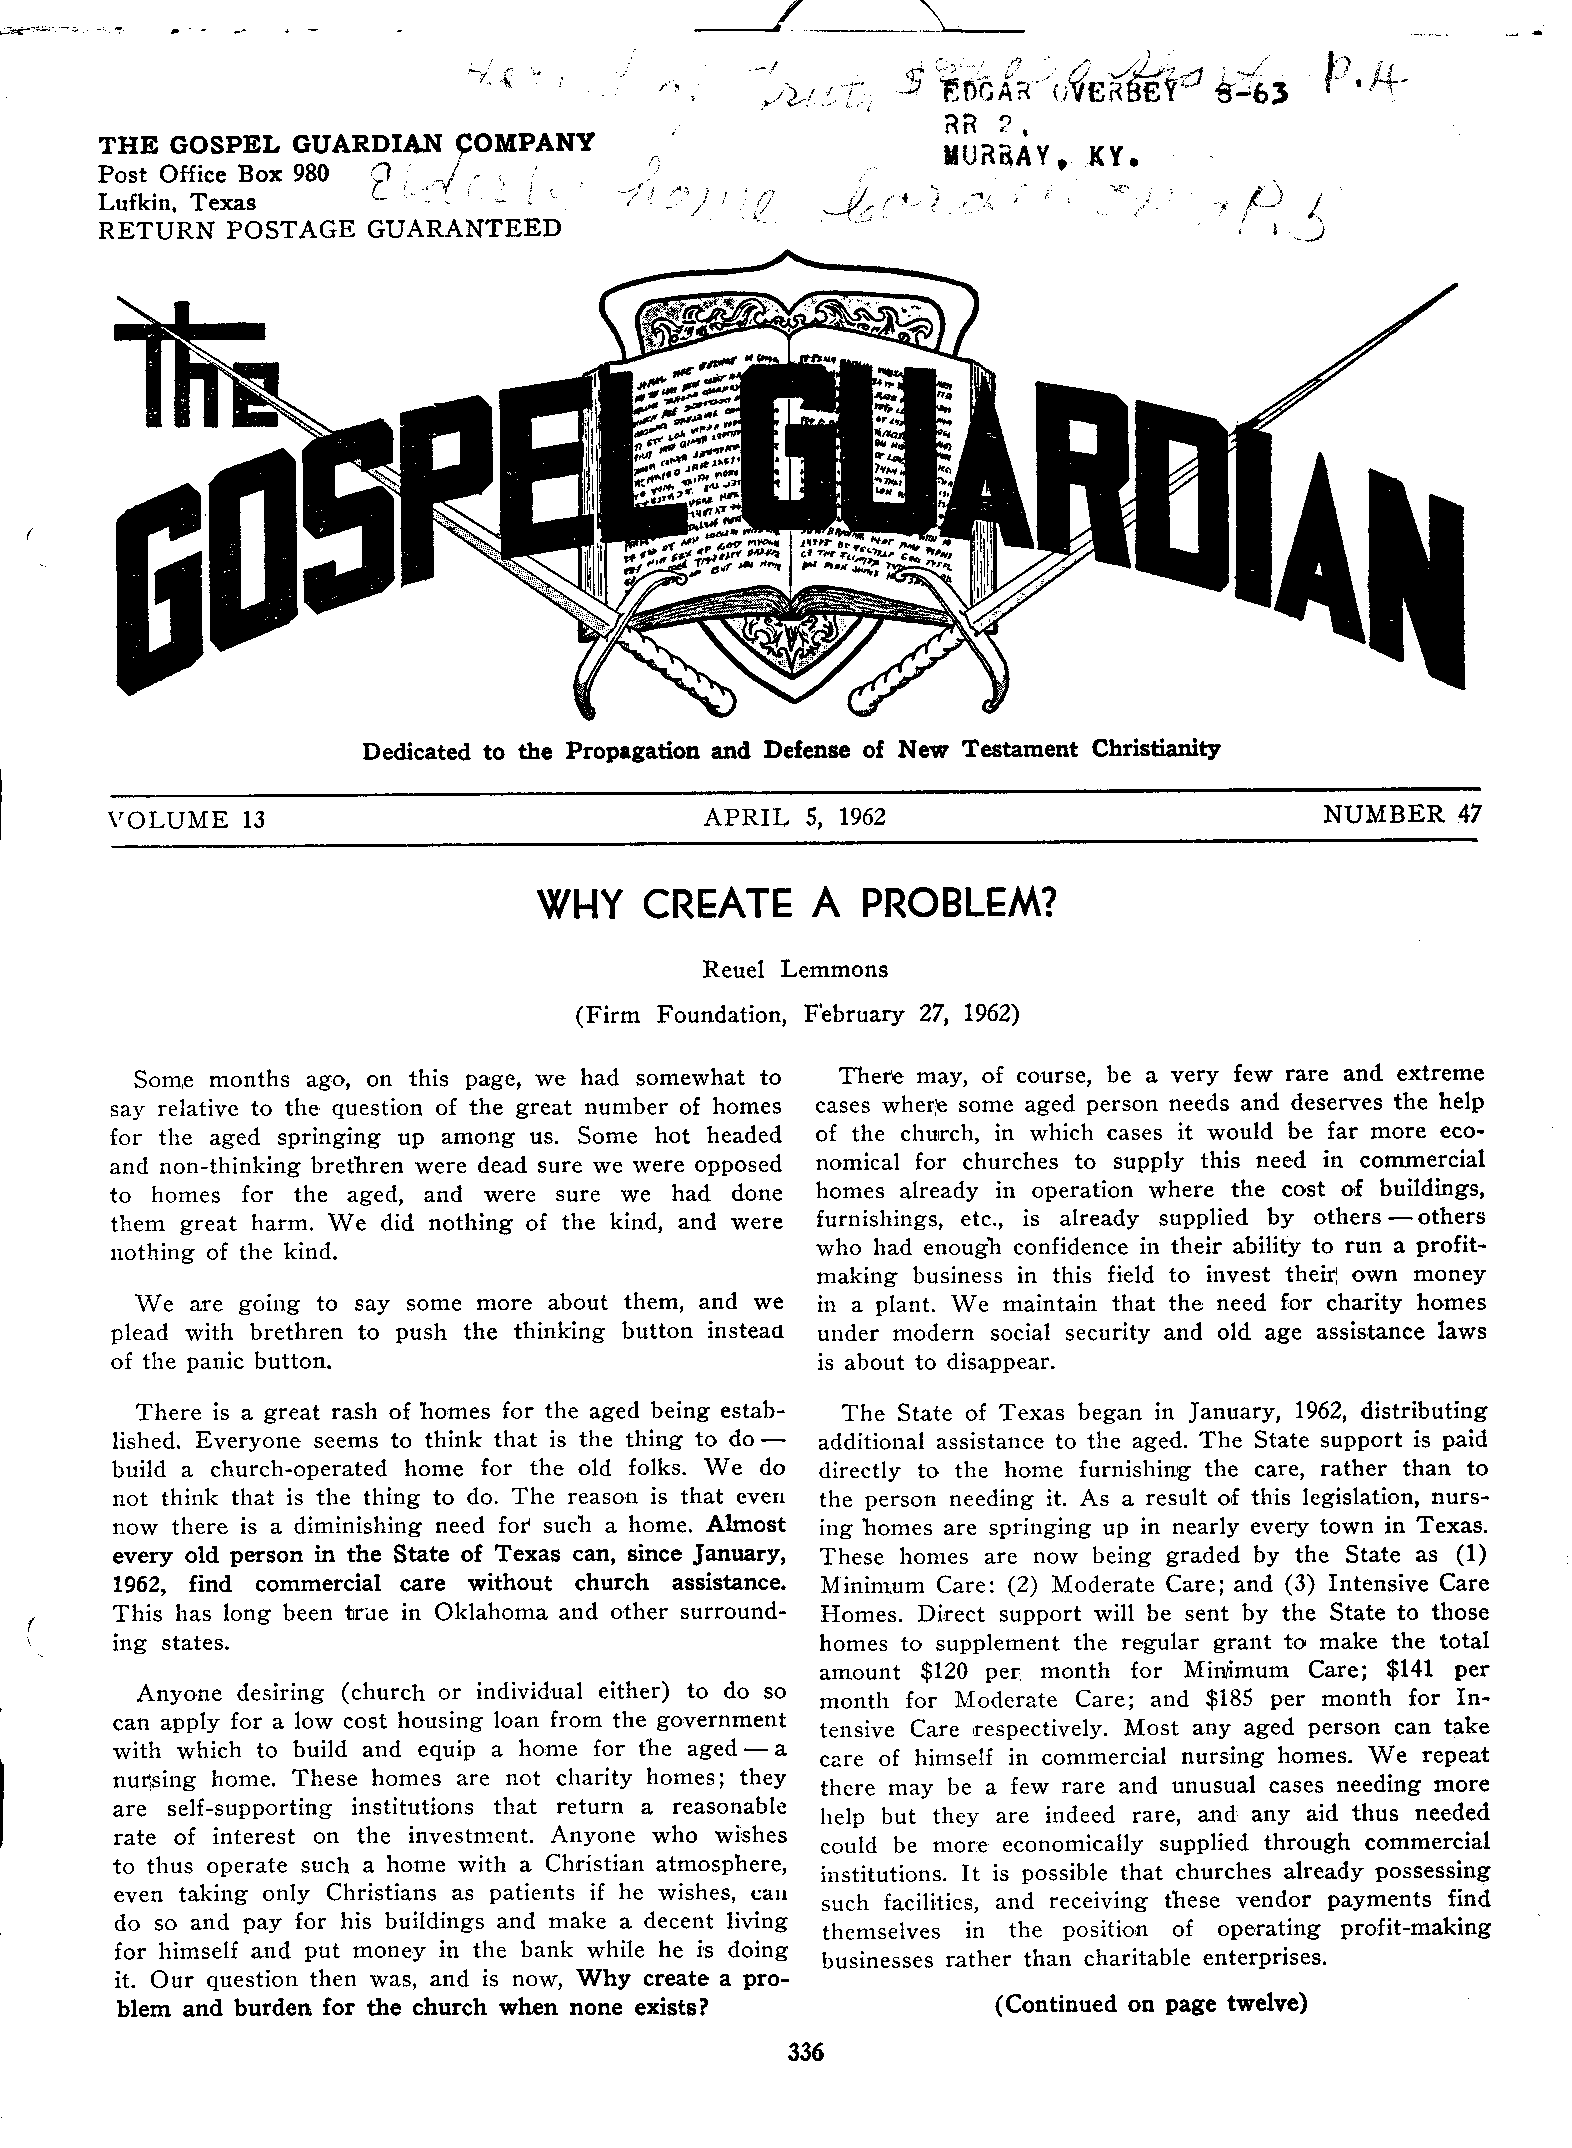 Gospel Guardian Original: Vol.13 No.47 Pg.1